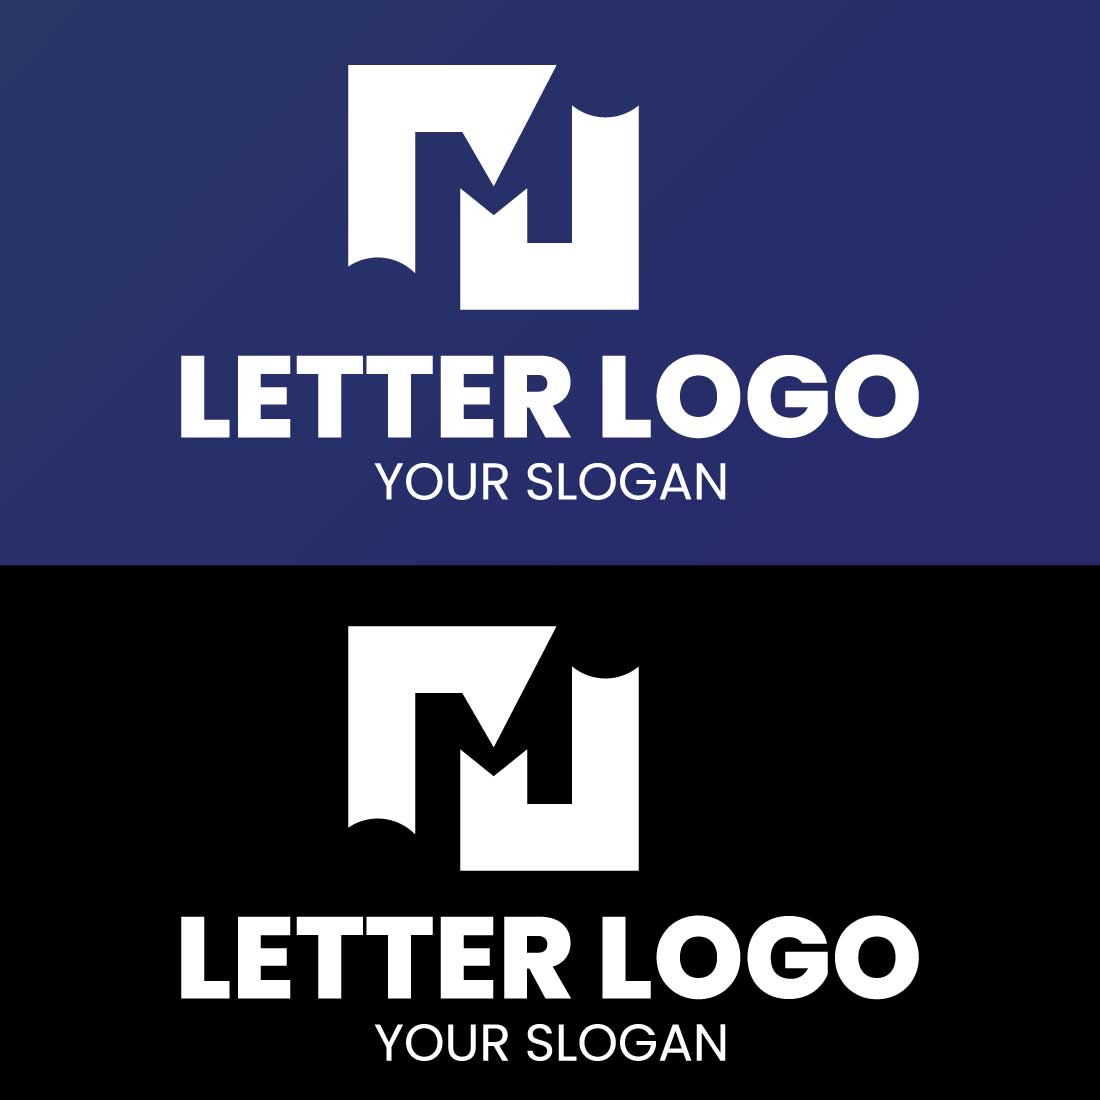 LOGO-com-slogan-3.png